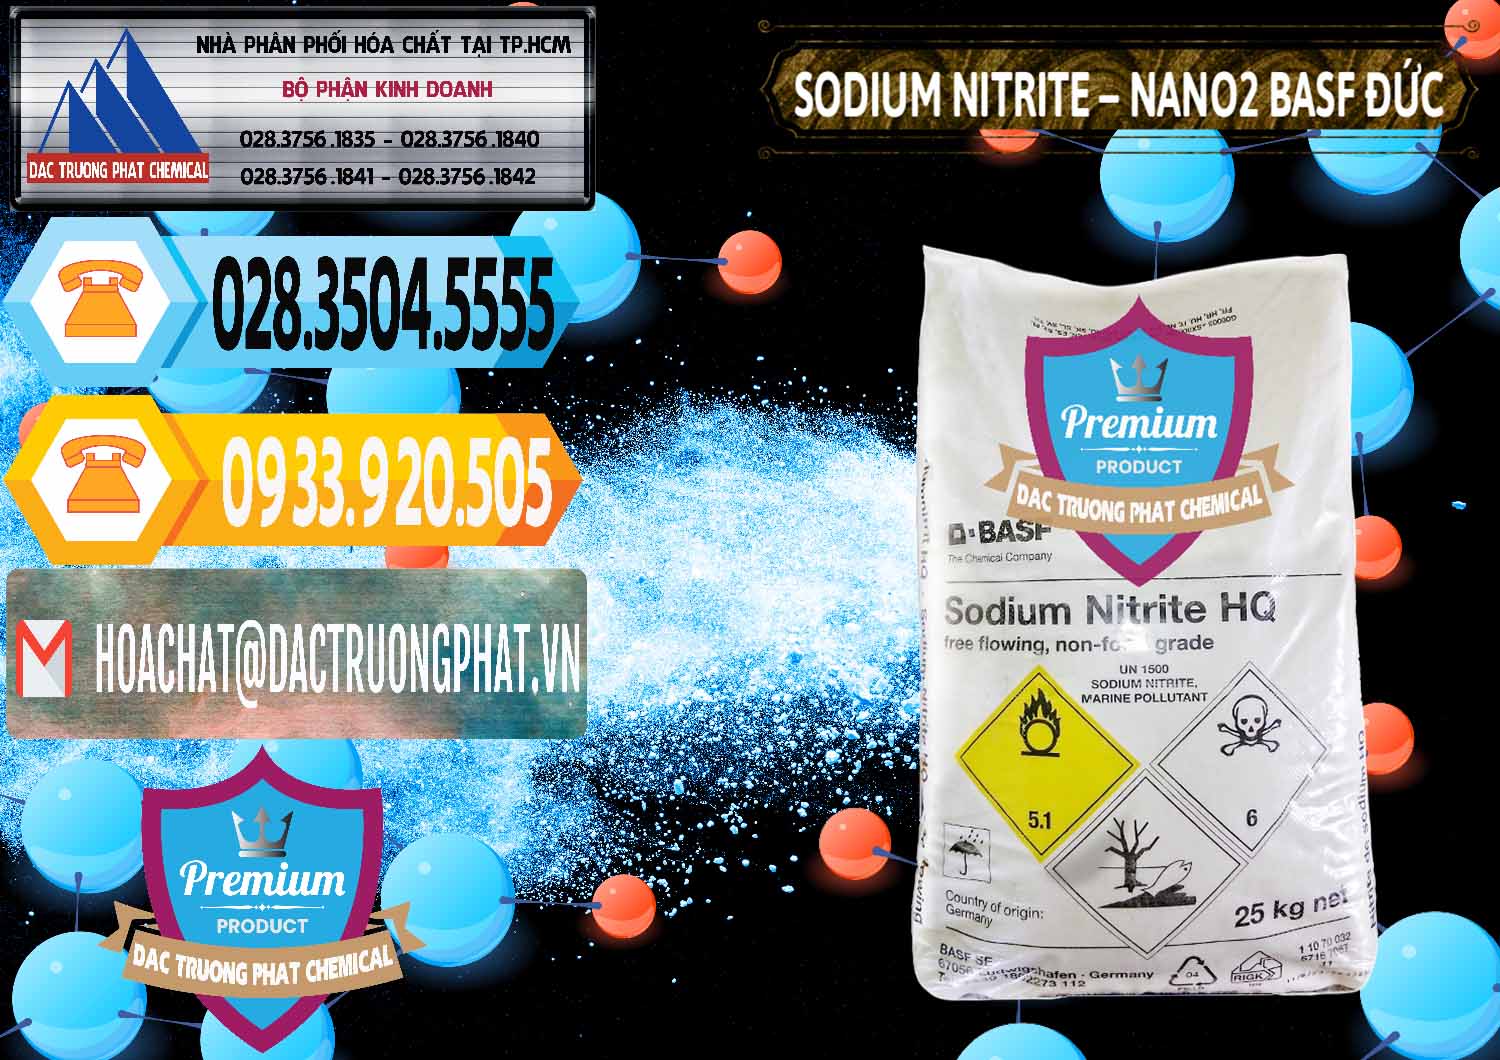 Đơn vị chuyên cung cấp _ bán Sodium Nitrite - NANO2 Đức BASF Germany - 0148 - Nhà cung cấp ( phân phối ) hóa chất tại TP.HCM - hoachattayrua.net